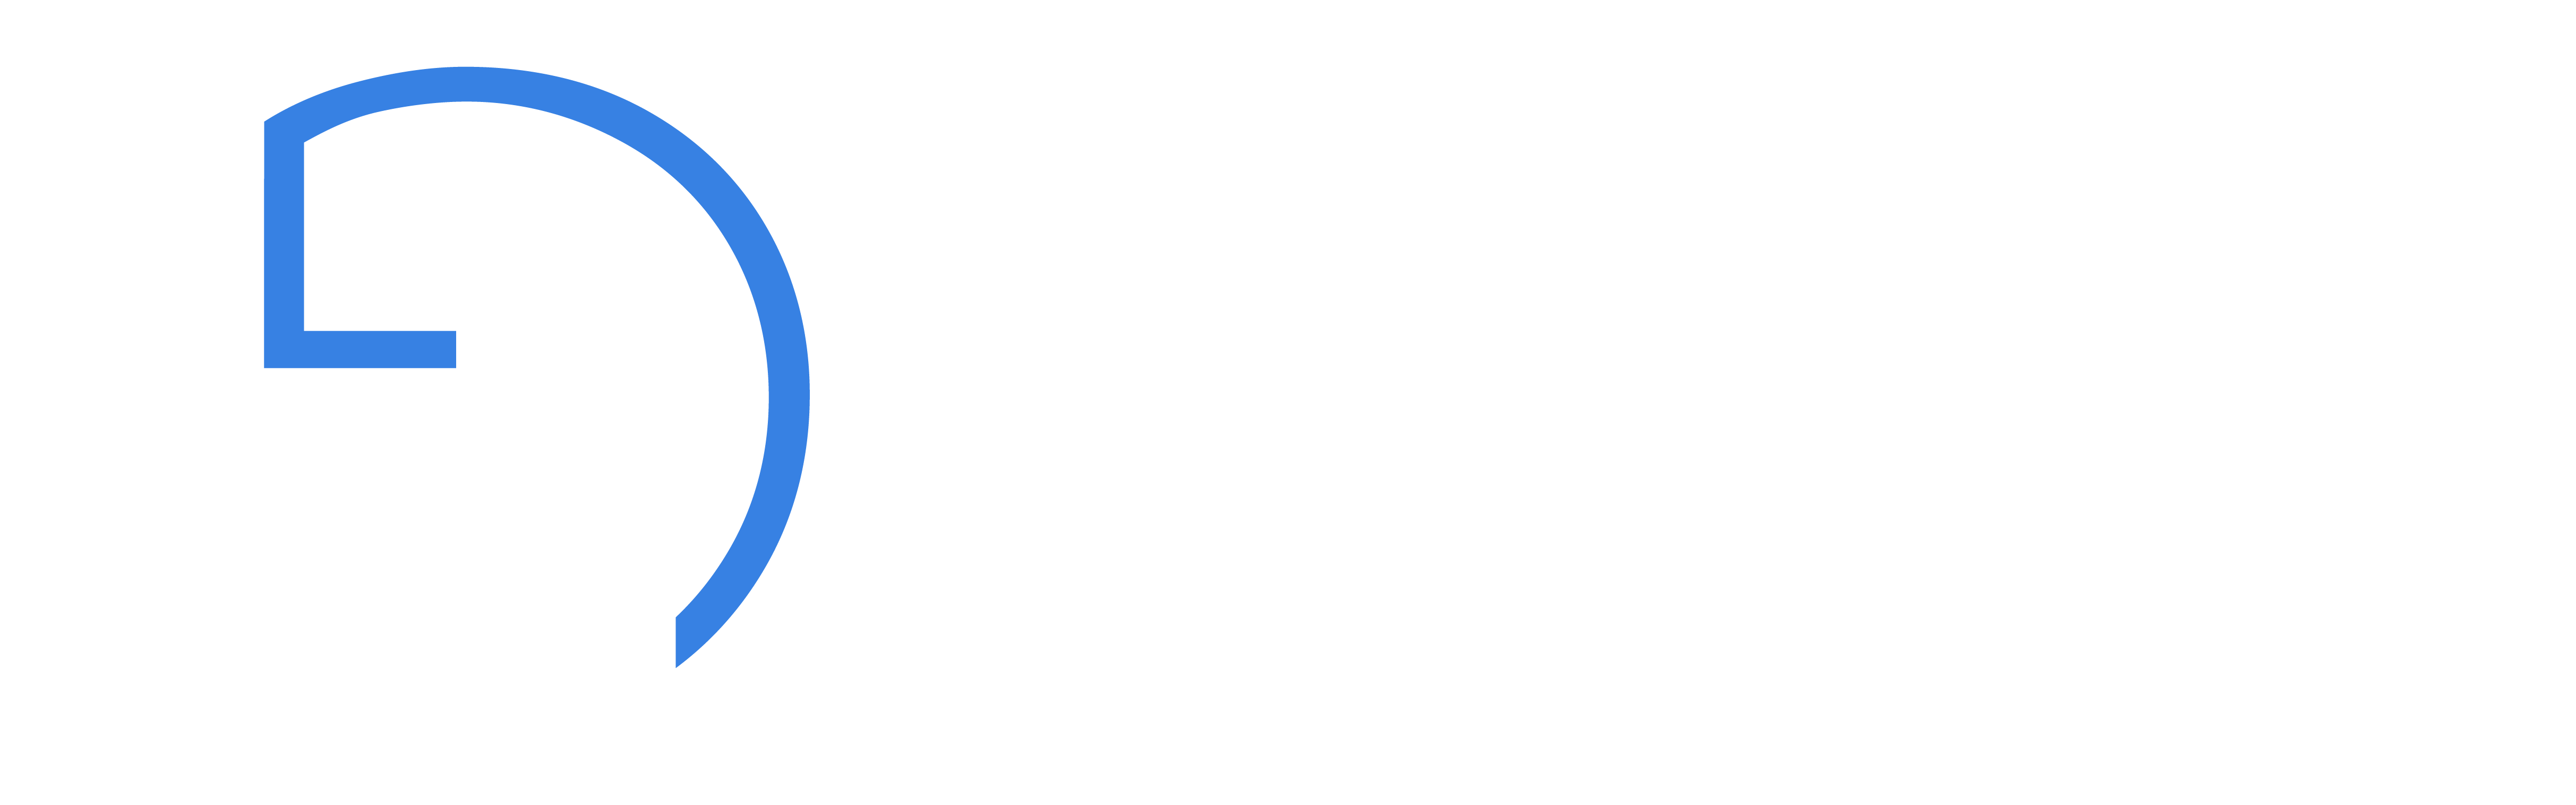 Abbildung des Logos von Dr. Gerhard Gamper in weiß